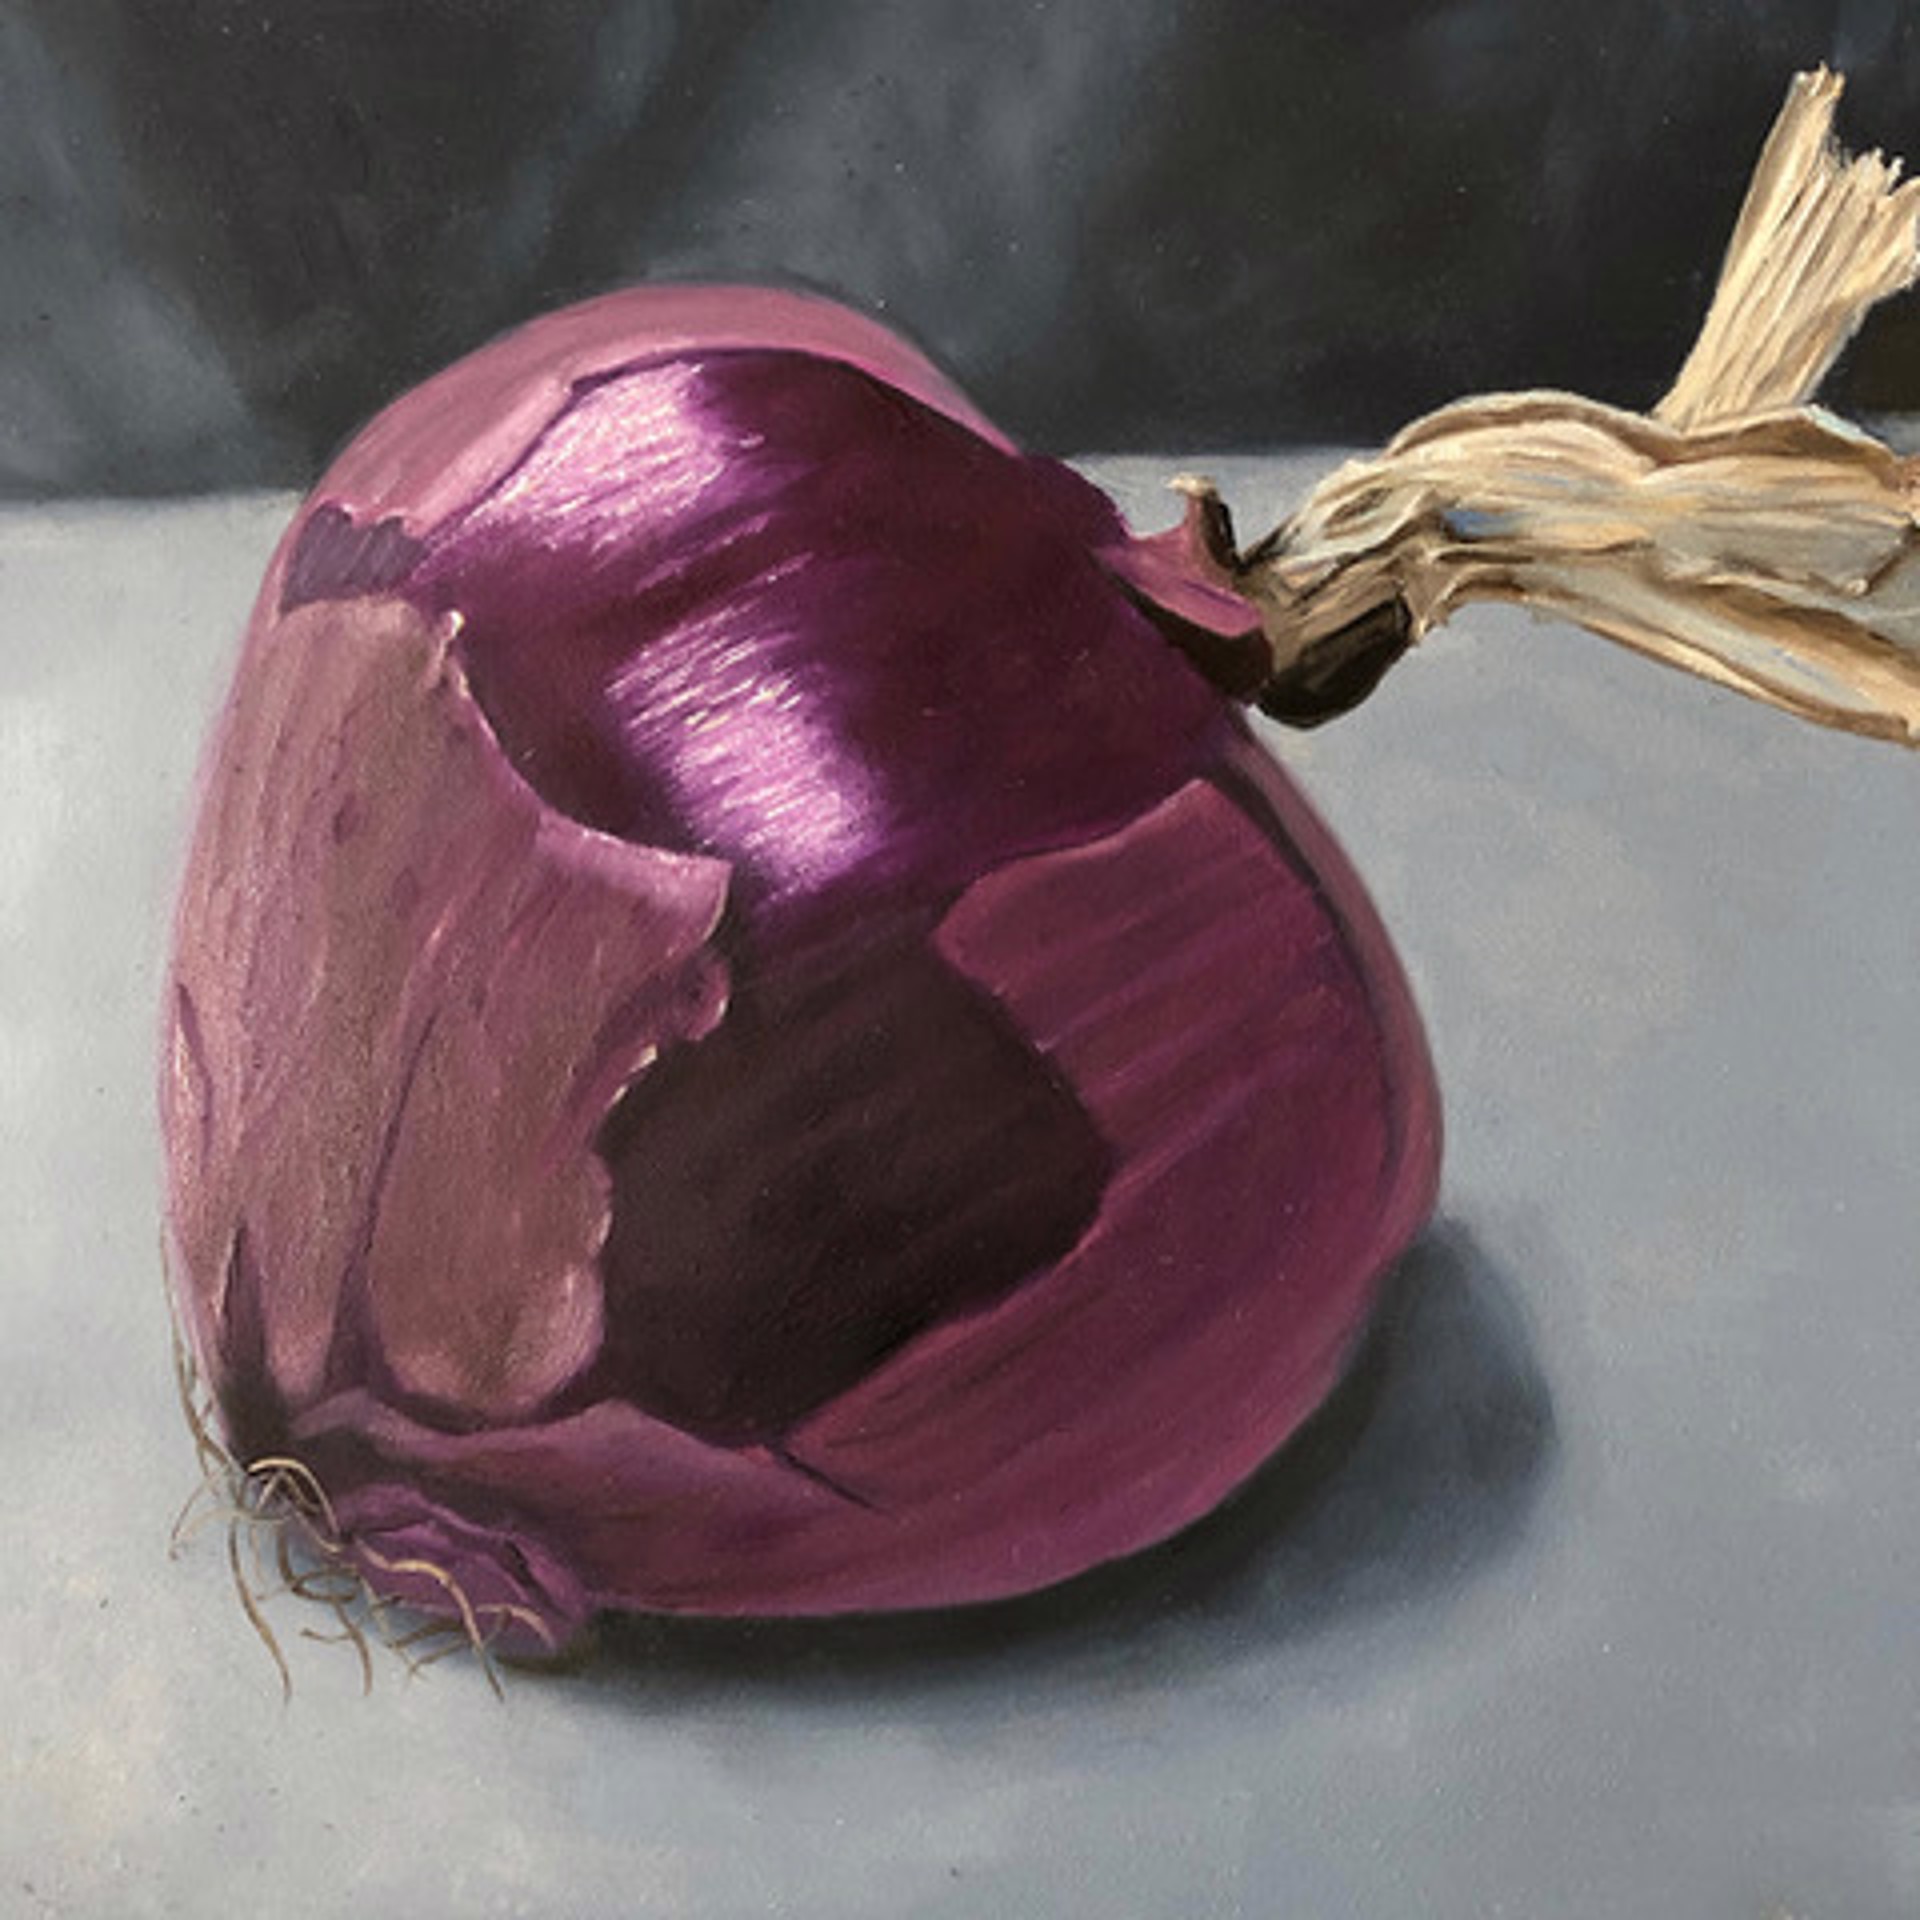 Purple Onion by Karen Merkin